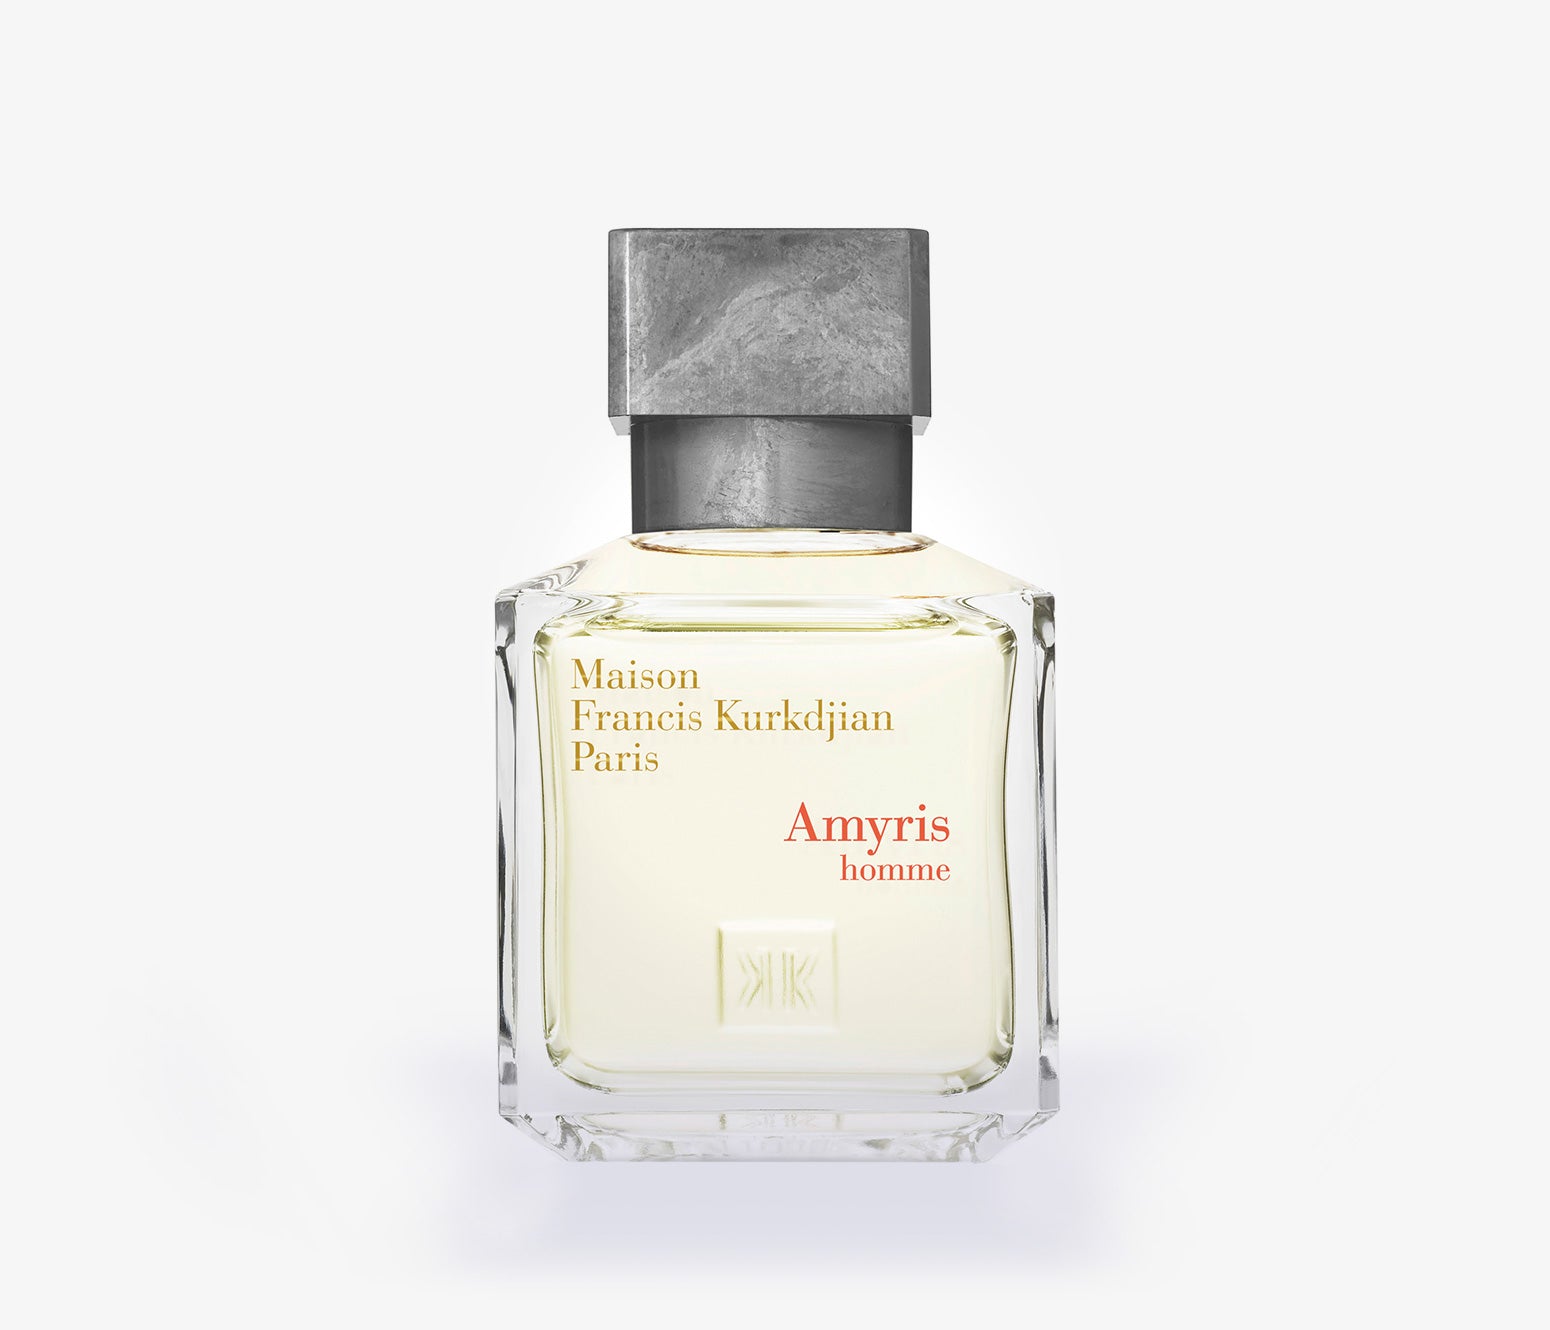 Maison Francis Kurkdjian - Amyris Homme - 70ml - PFS7228 - Product Image - Fragrance - Les Senteurs